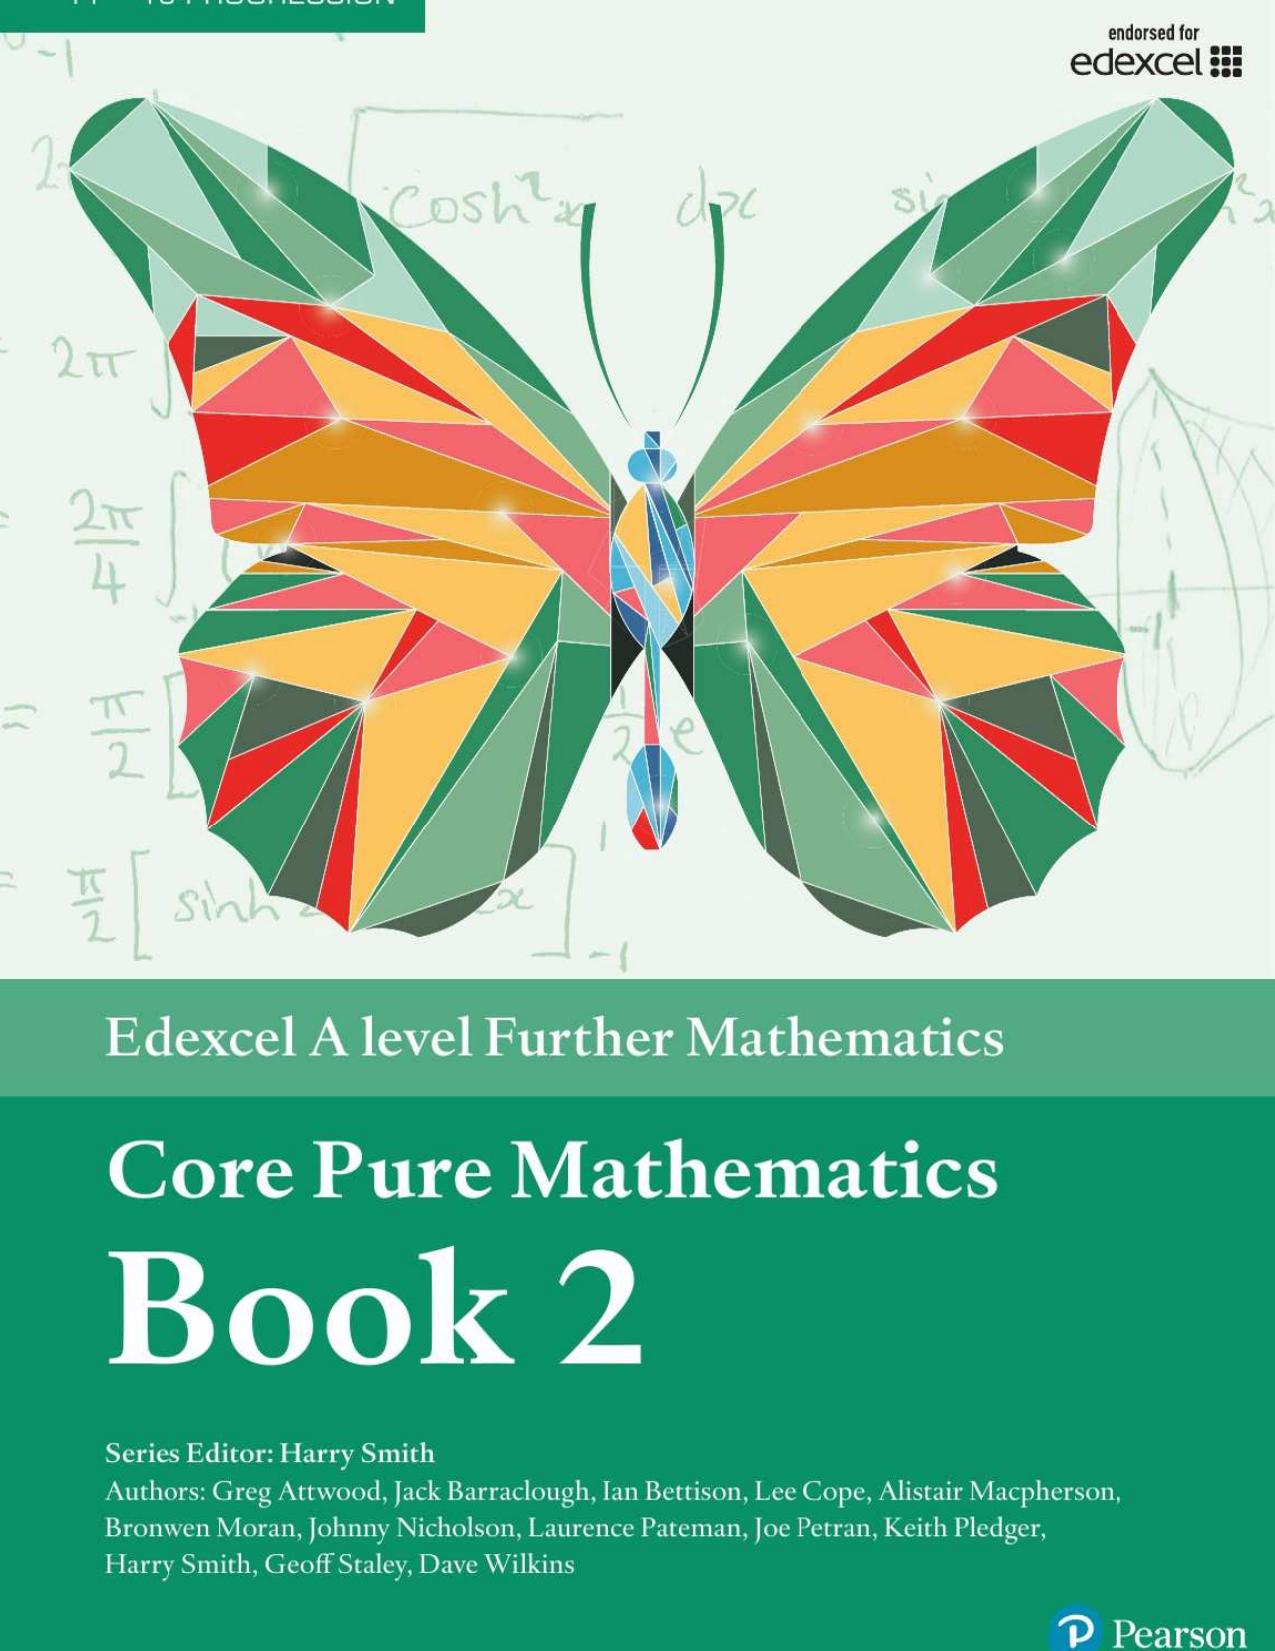 Core Pure Mathematics Book 2